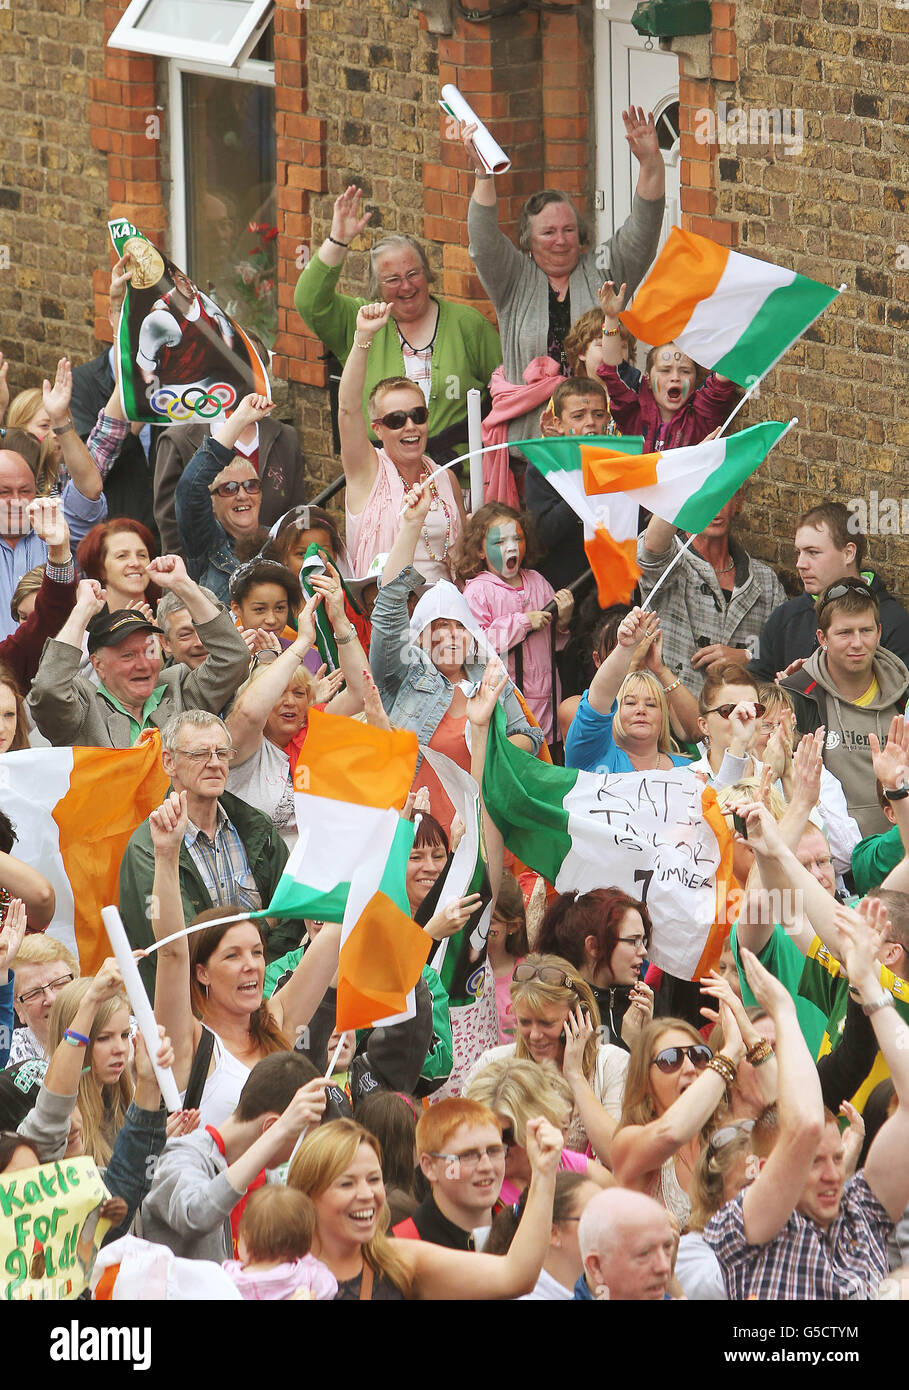 Hunderte von Menschen schauen sich in Bray, Co. Wicklow, eine große Leinwand an und zeigen, wie die irische Heimatstadtkämpferin Katie Taylor während ihres Halbfinalkampfes Women's Boxing Light (60 kg) am zwölften Tag der Olympischen Spiele 2012 in London gegen die tajikanischsprachige Mavzuna Chorieva antritt. Stockfoto